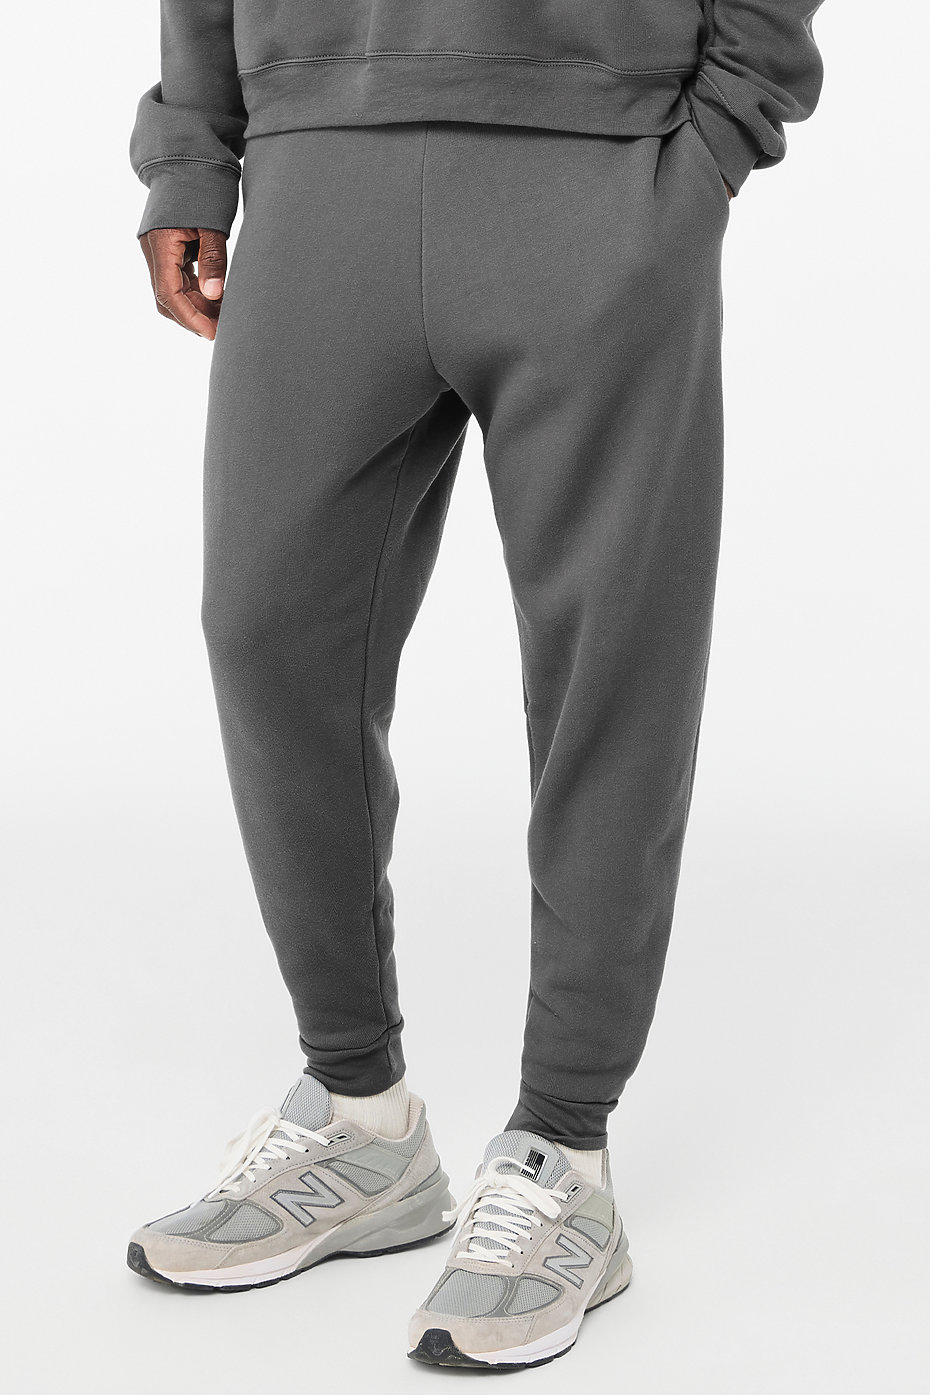 Custom All Over Print Plain Athletic Men 100% Polyester Slim Fit